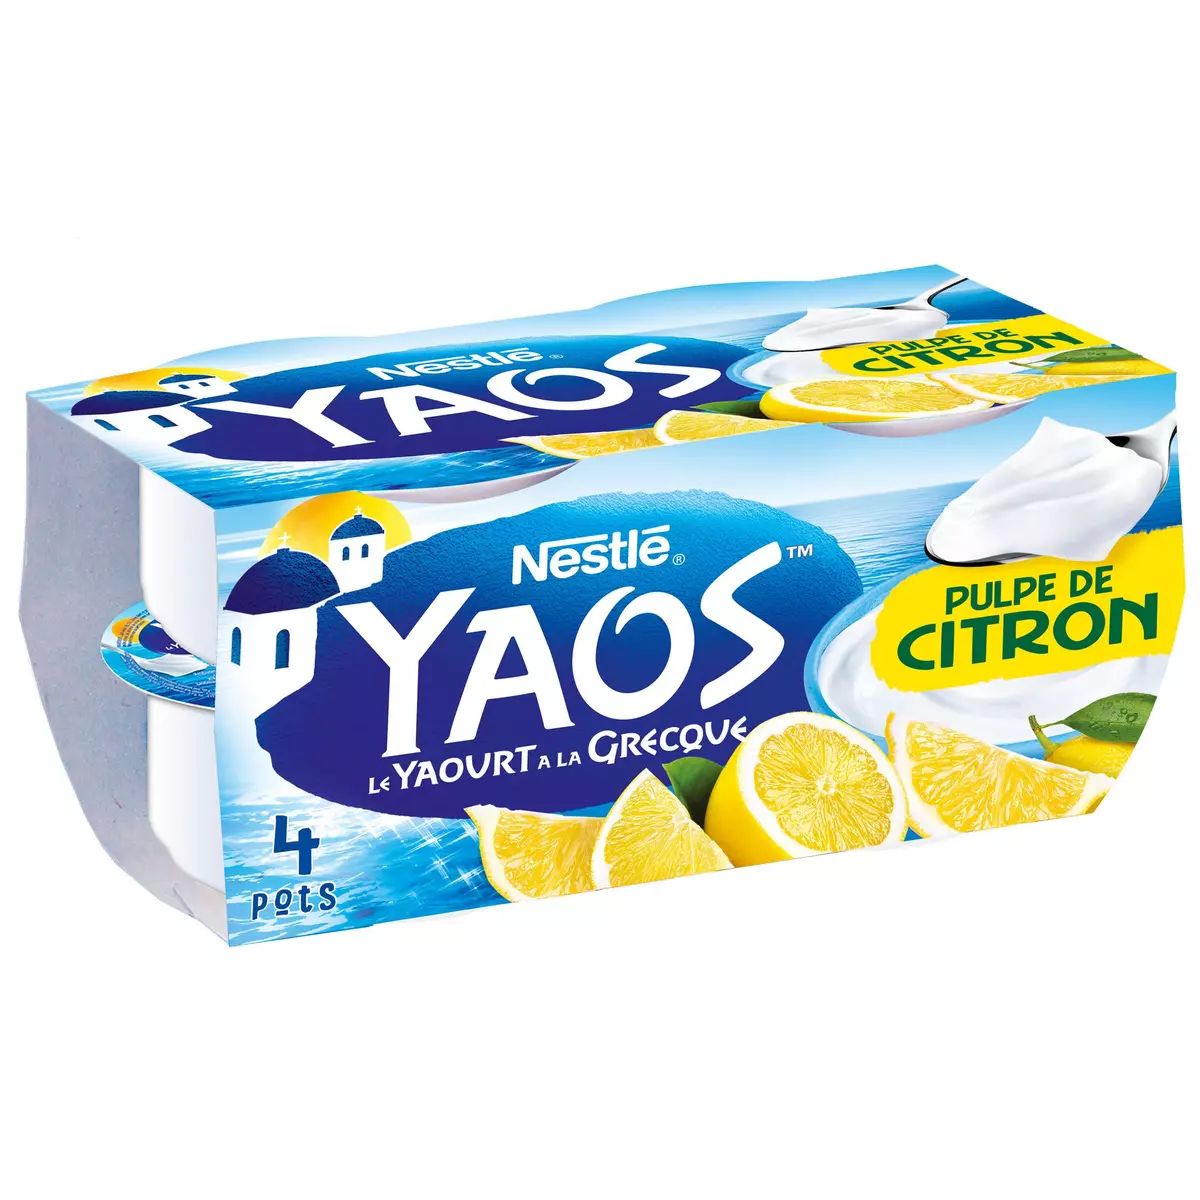 YAOS Yaourt à la grecque citron 4x125g